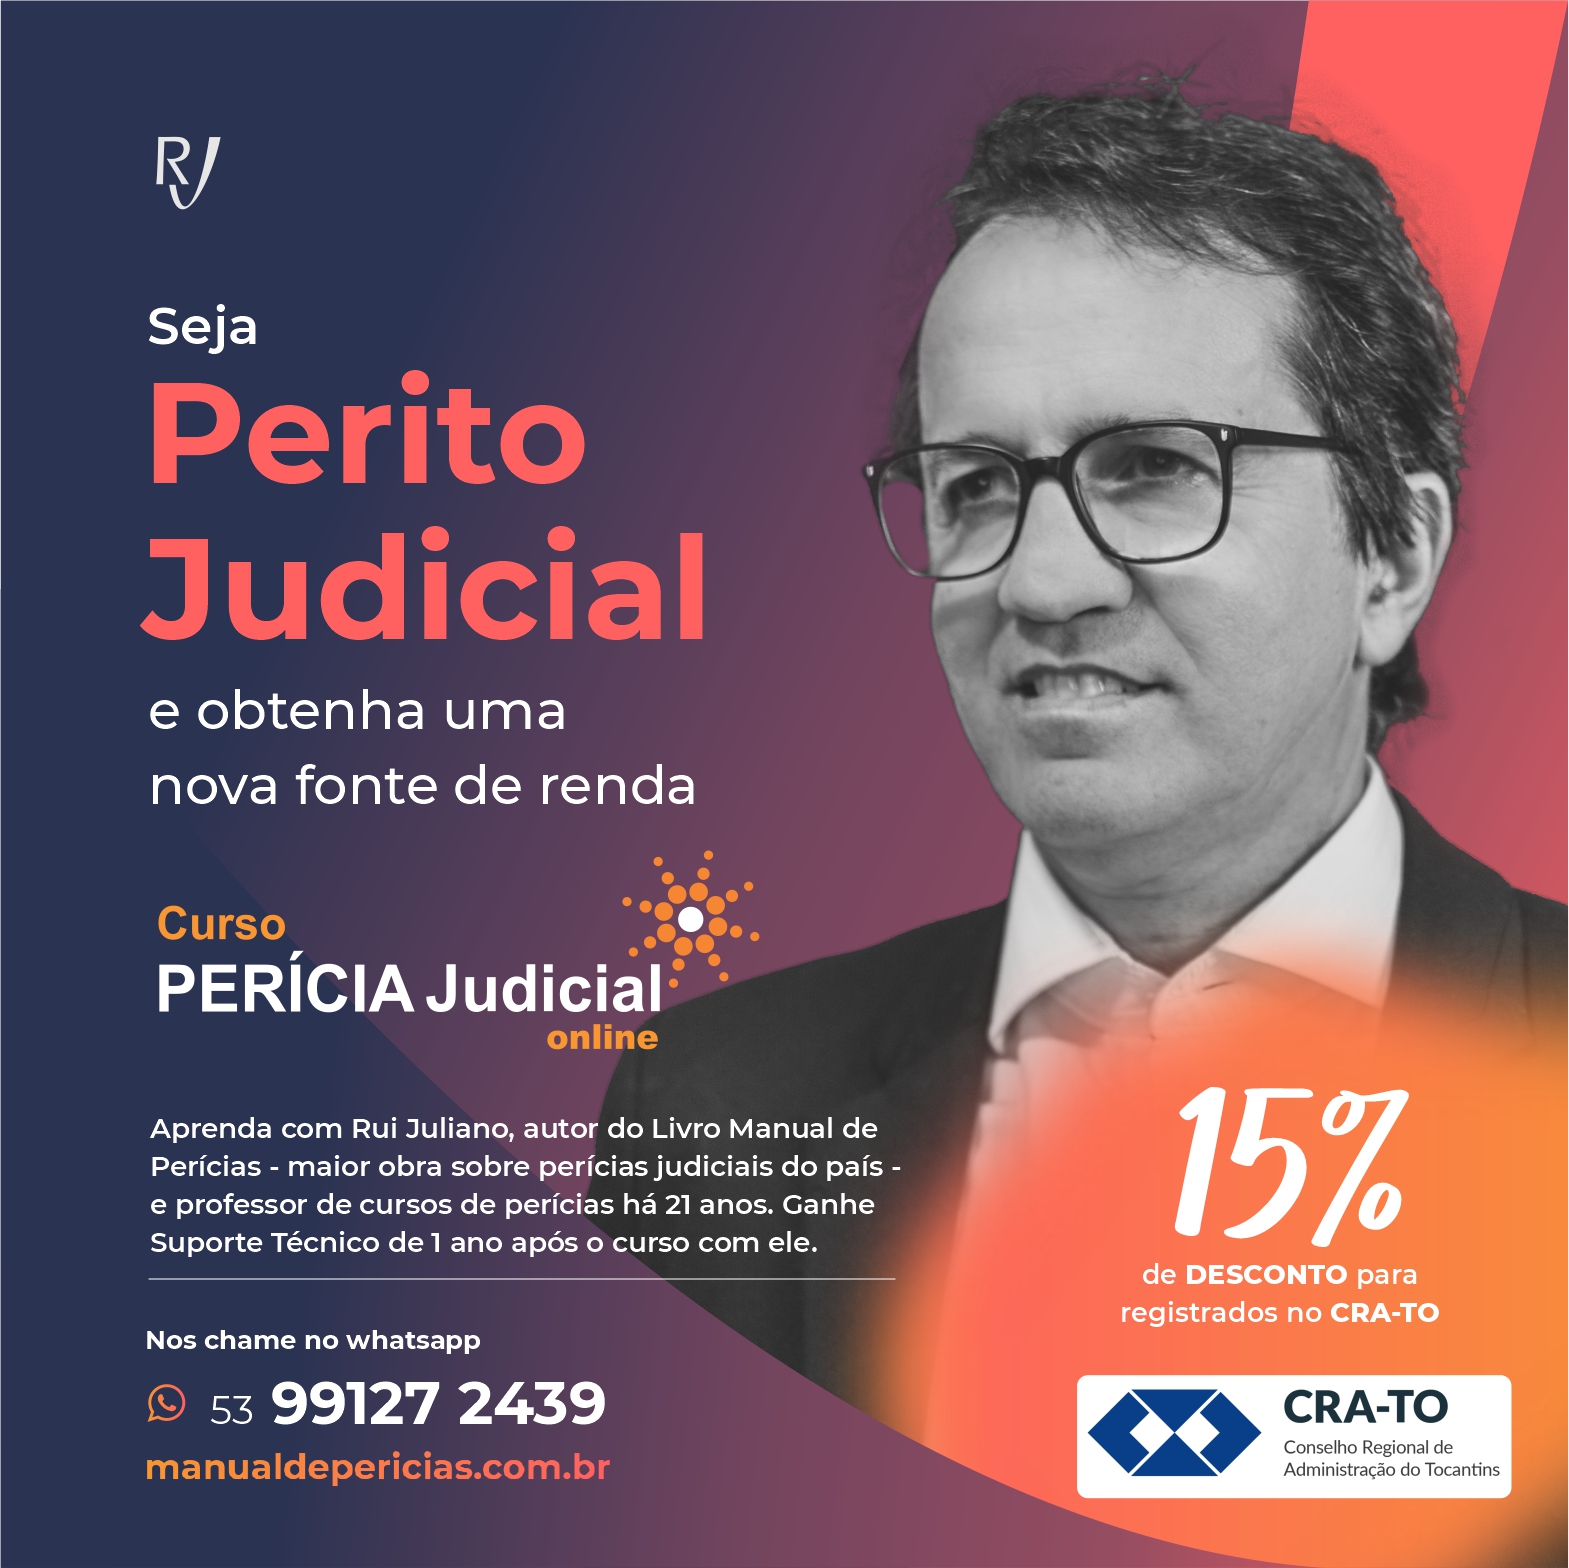 You are currently viewing Aproveite o desconto de 15% – Convênio com a Juliano & Juliano para os cursos de Perícia Judicial e Perícia de Cálculos Financeiros e Trabalhistas